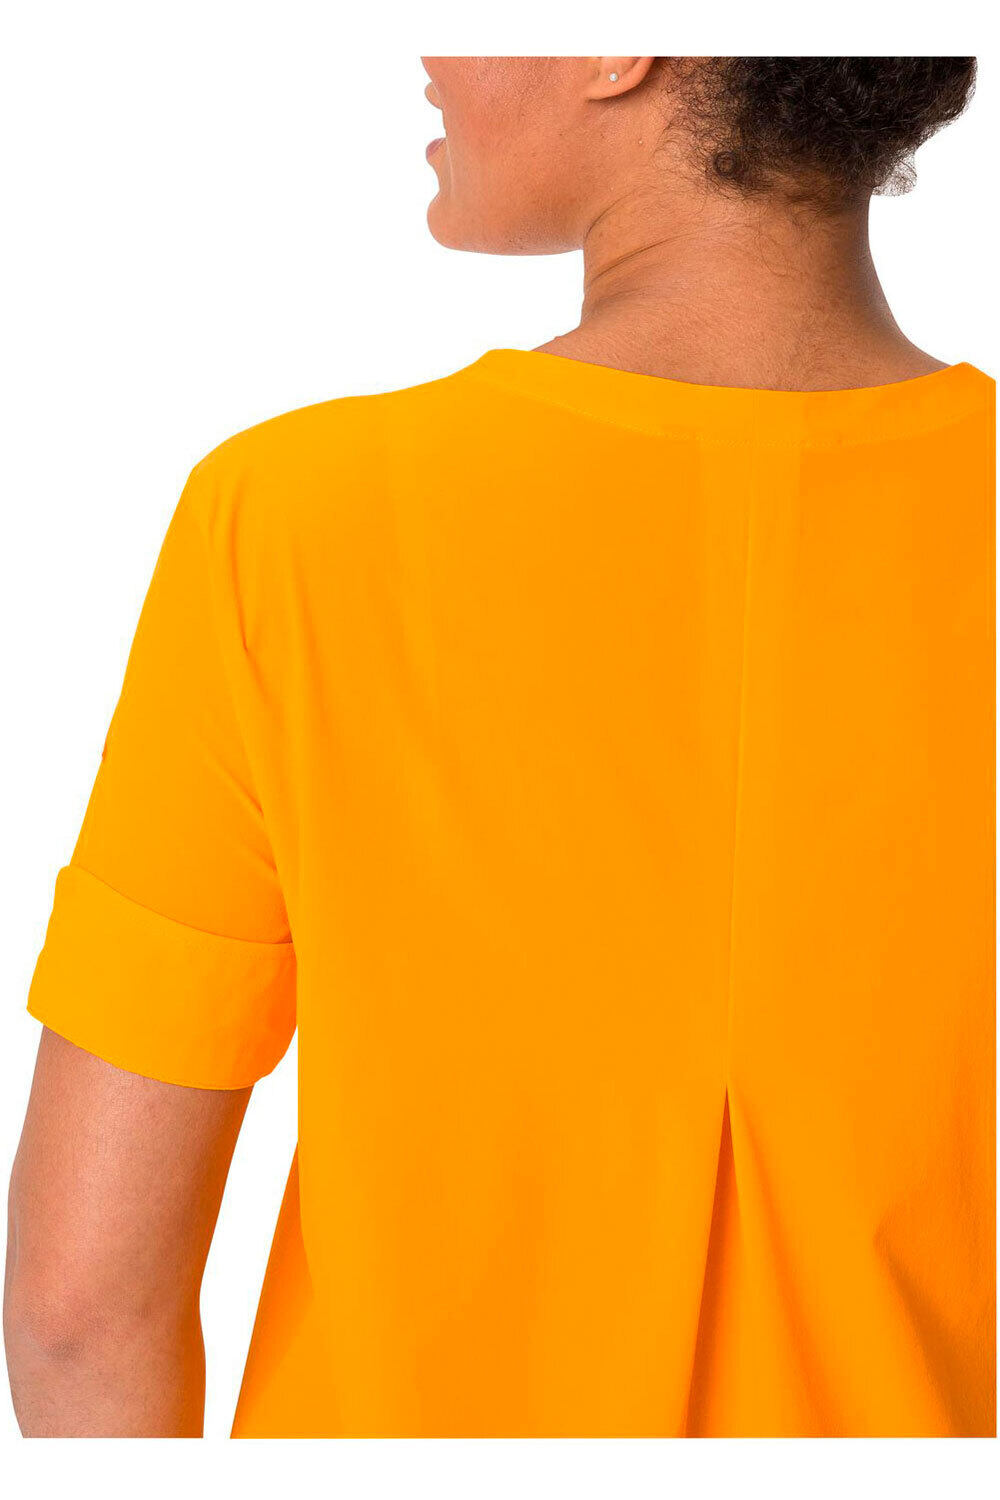 Vaude camisa montaña manga corta mujer Women  s Skomer Shirt III 03